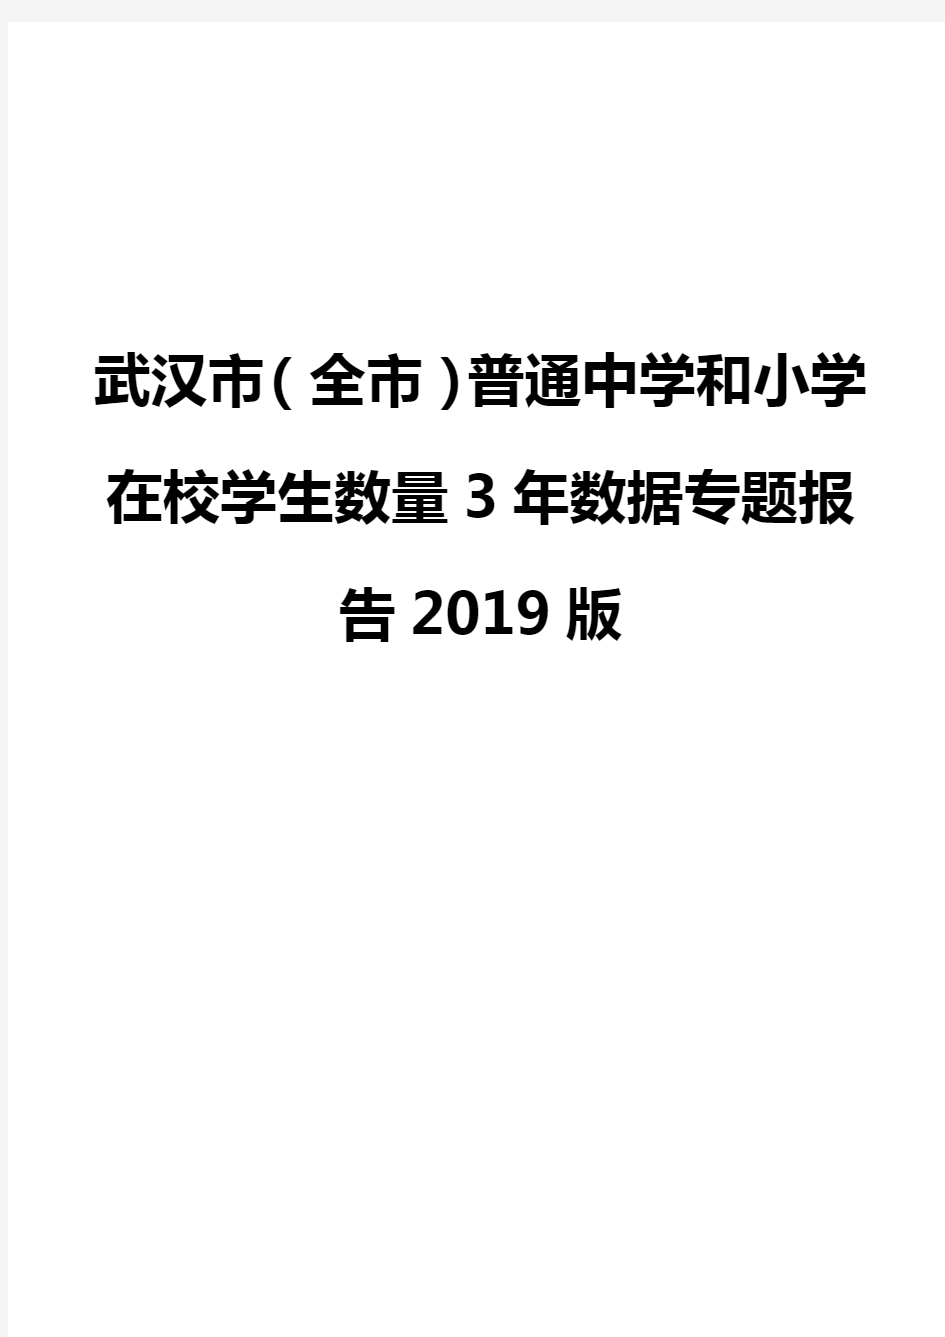 武汉市(全市)普通中学和小学在校学生数量3年数据专题报告2019版